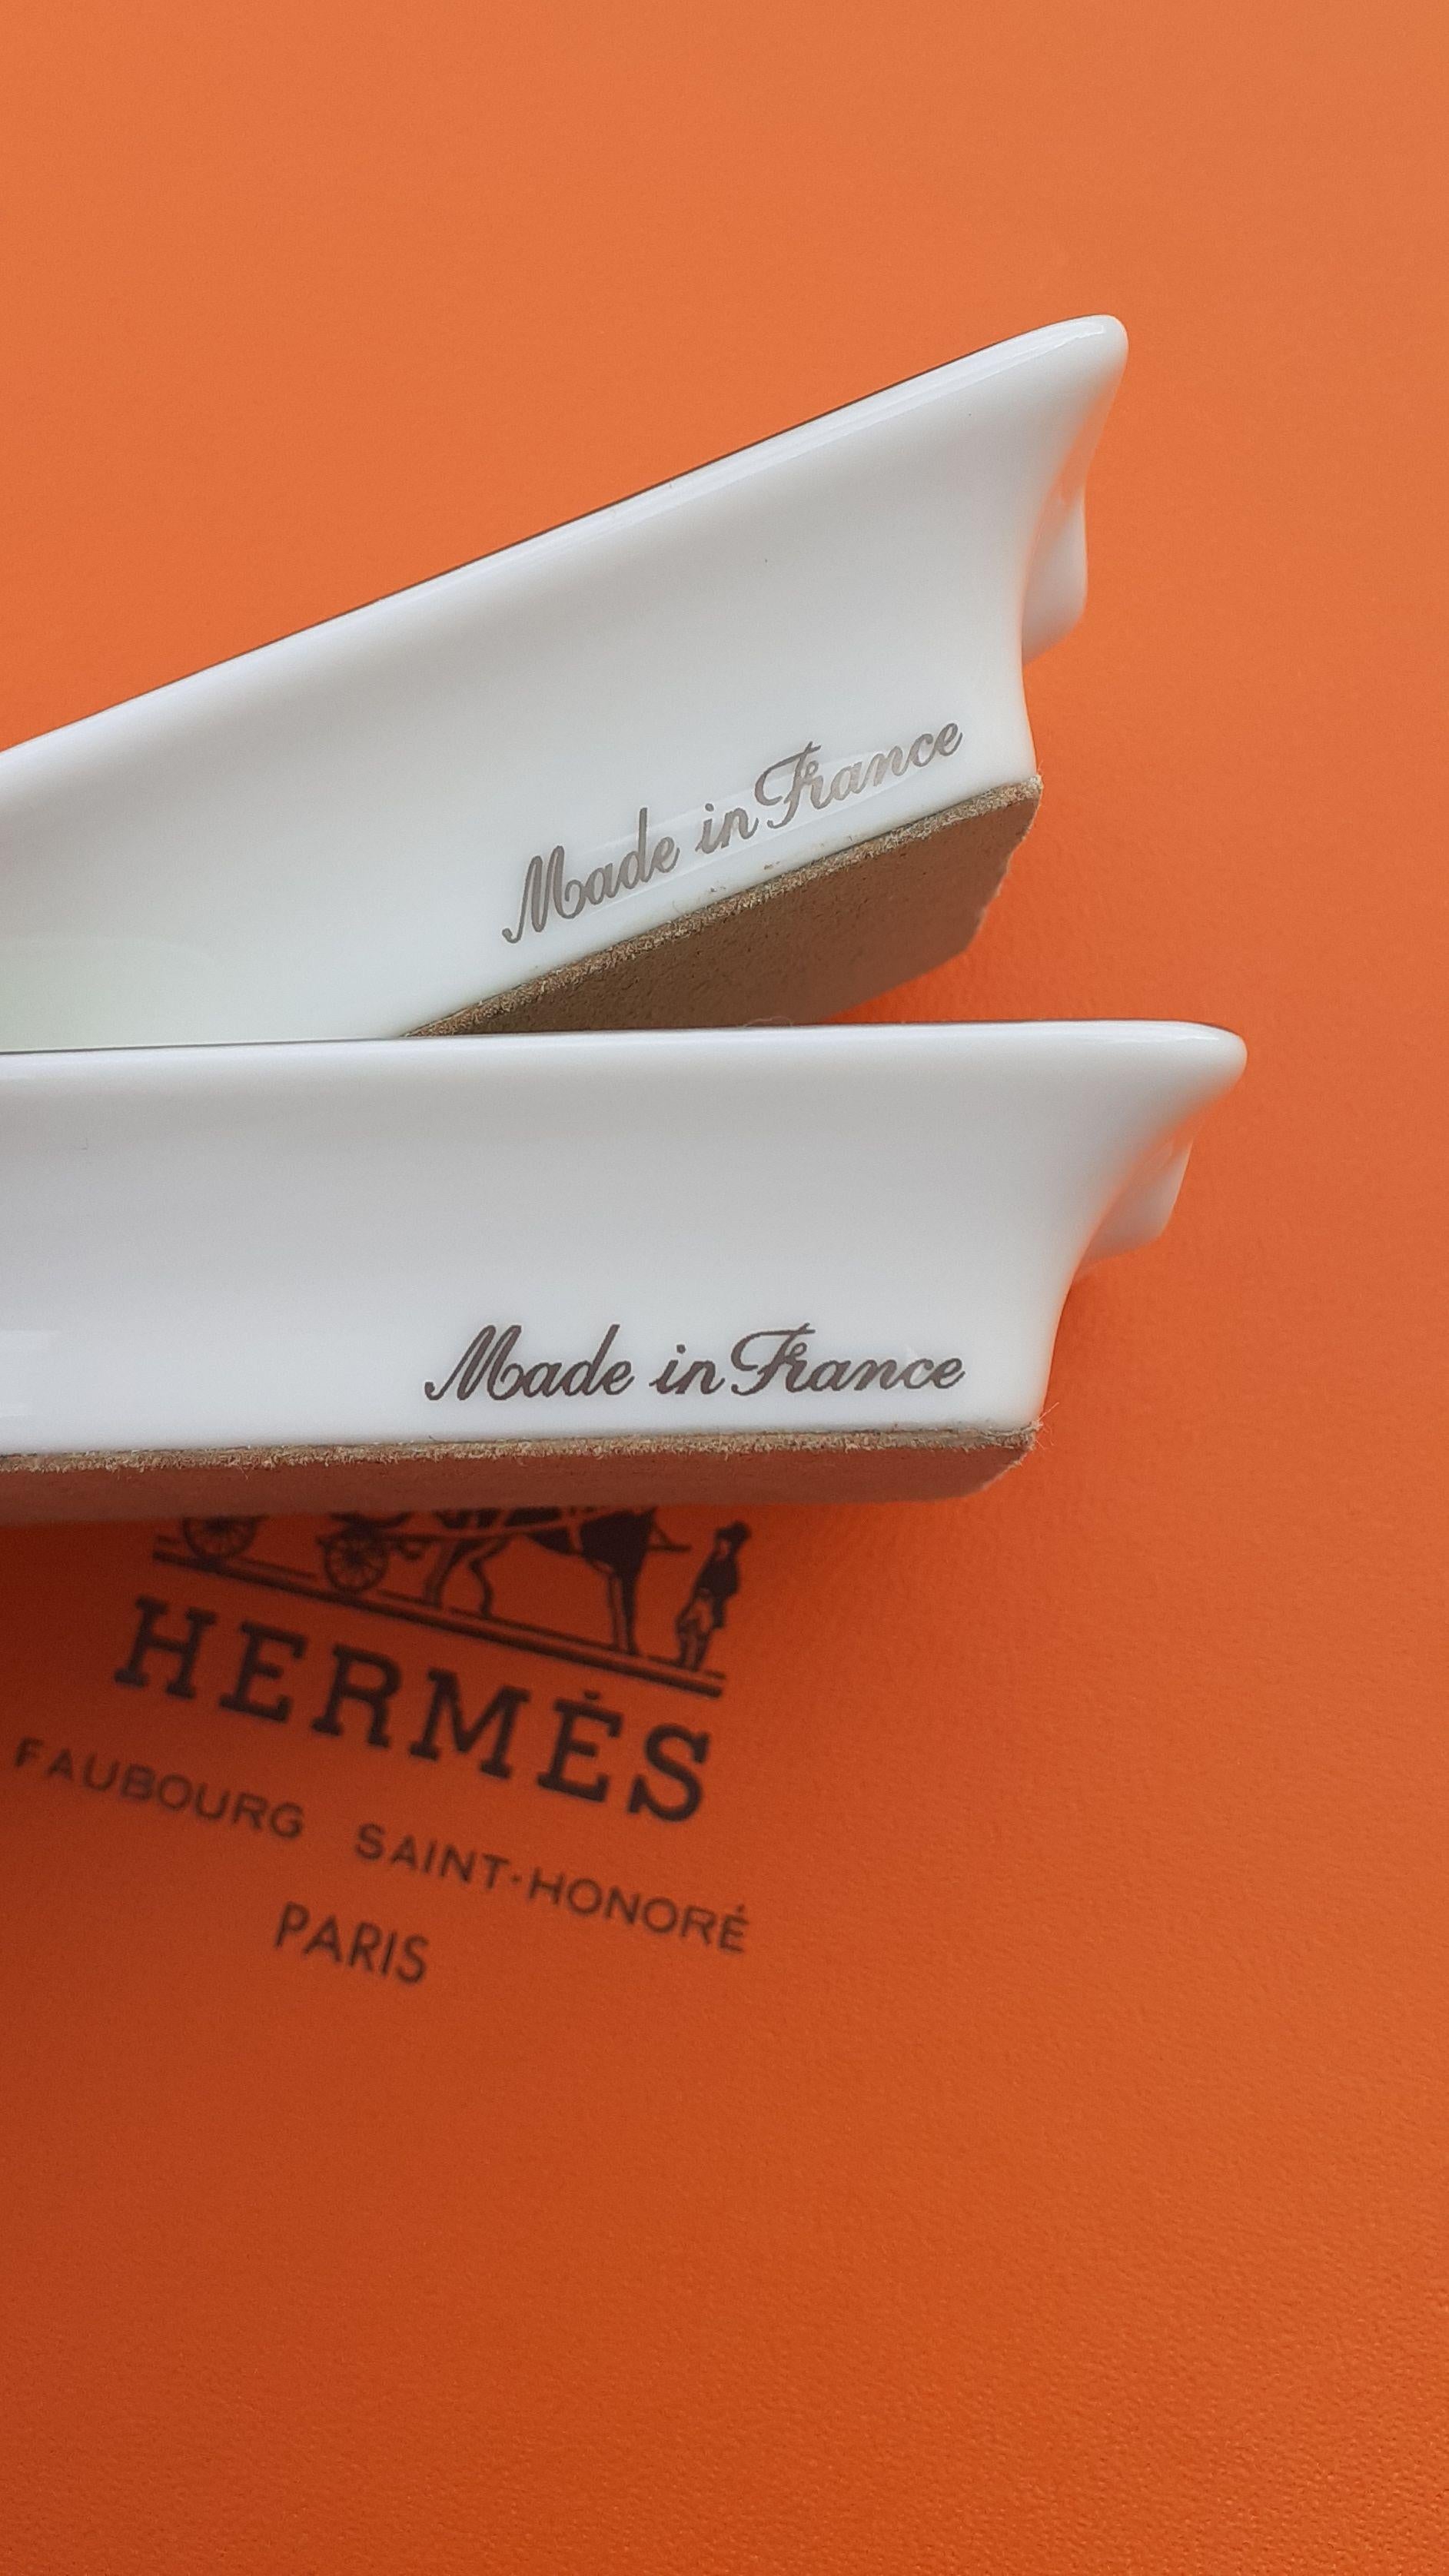 Hermès Set of 2 mini Ashtrays Bull and Horses Prints in Porcelain Texas  7